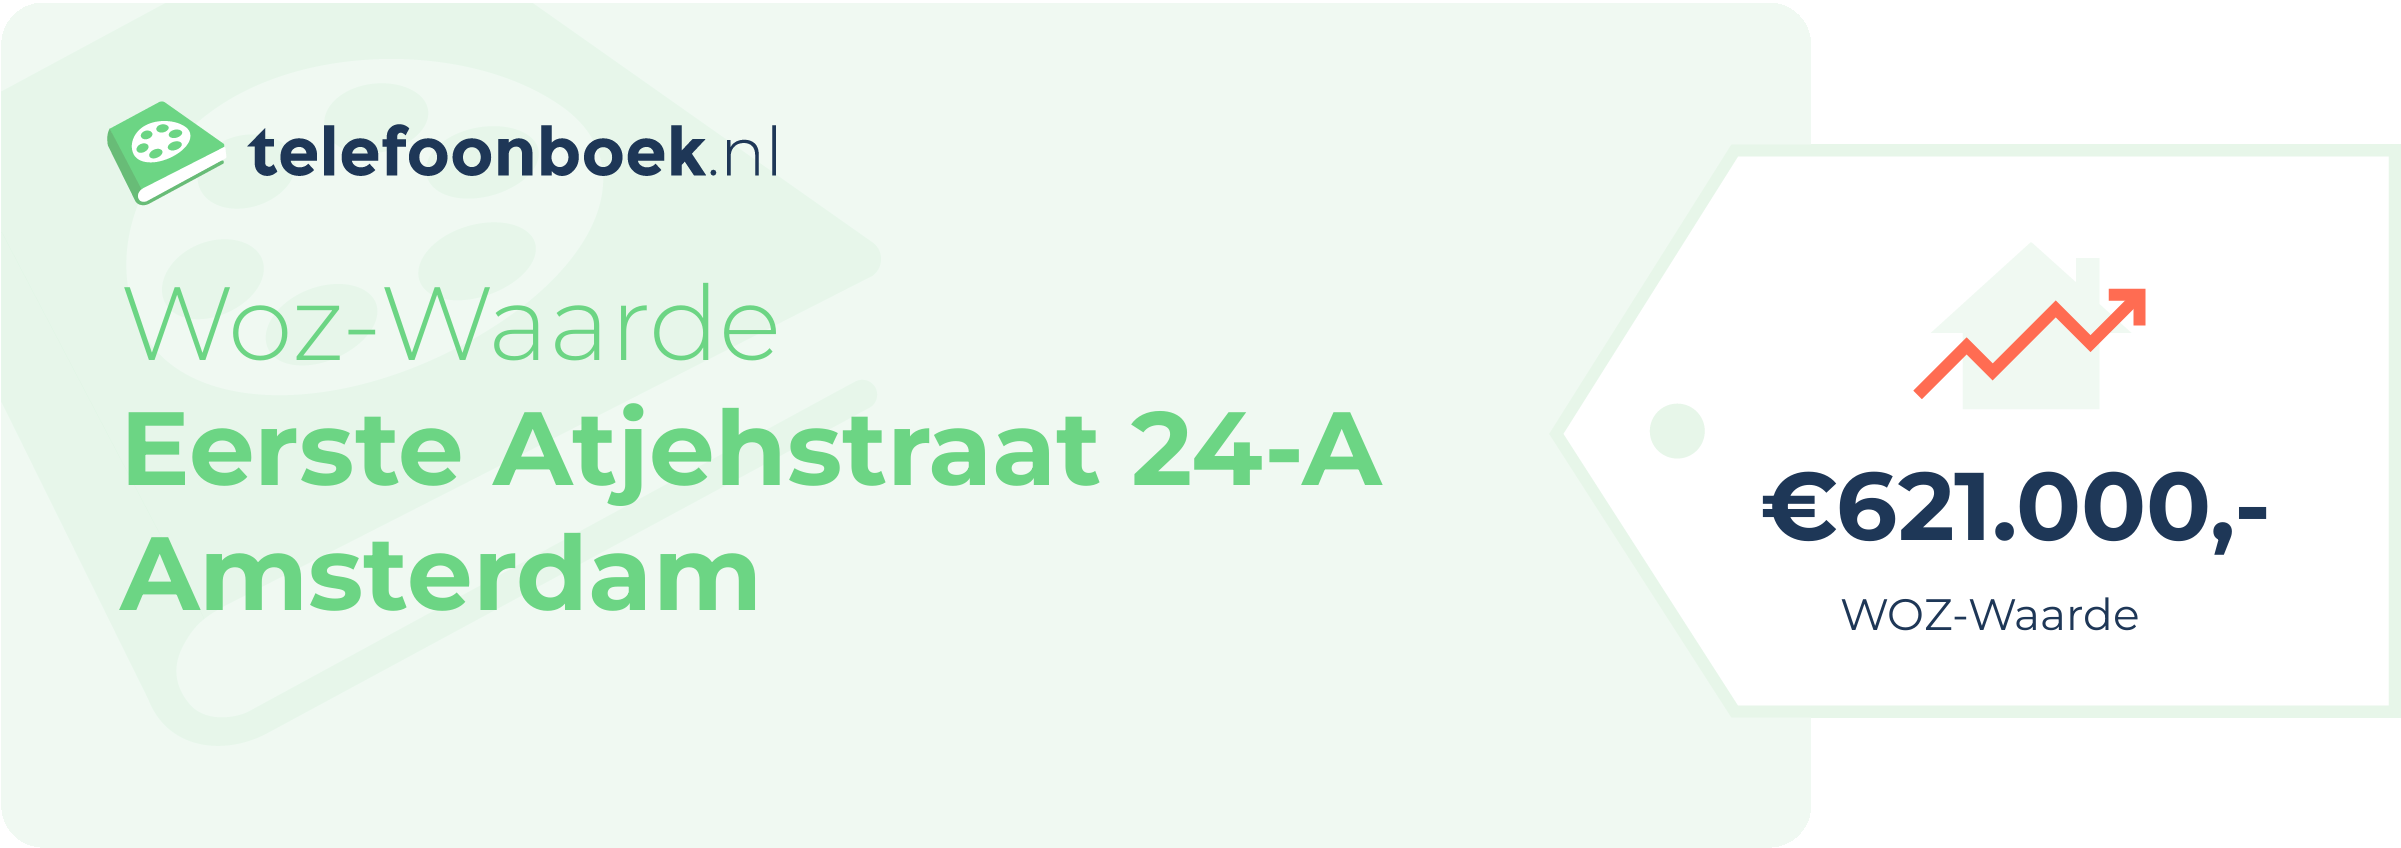 WOZ-waarde Eerste Atjehstraat 24-A Amsterdam